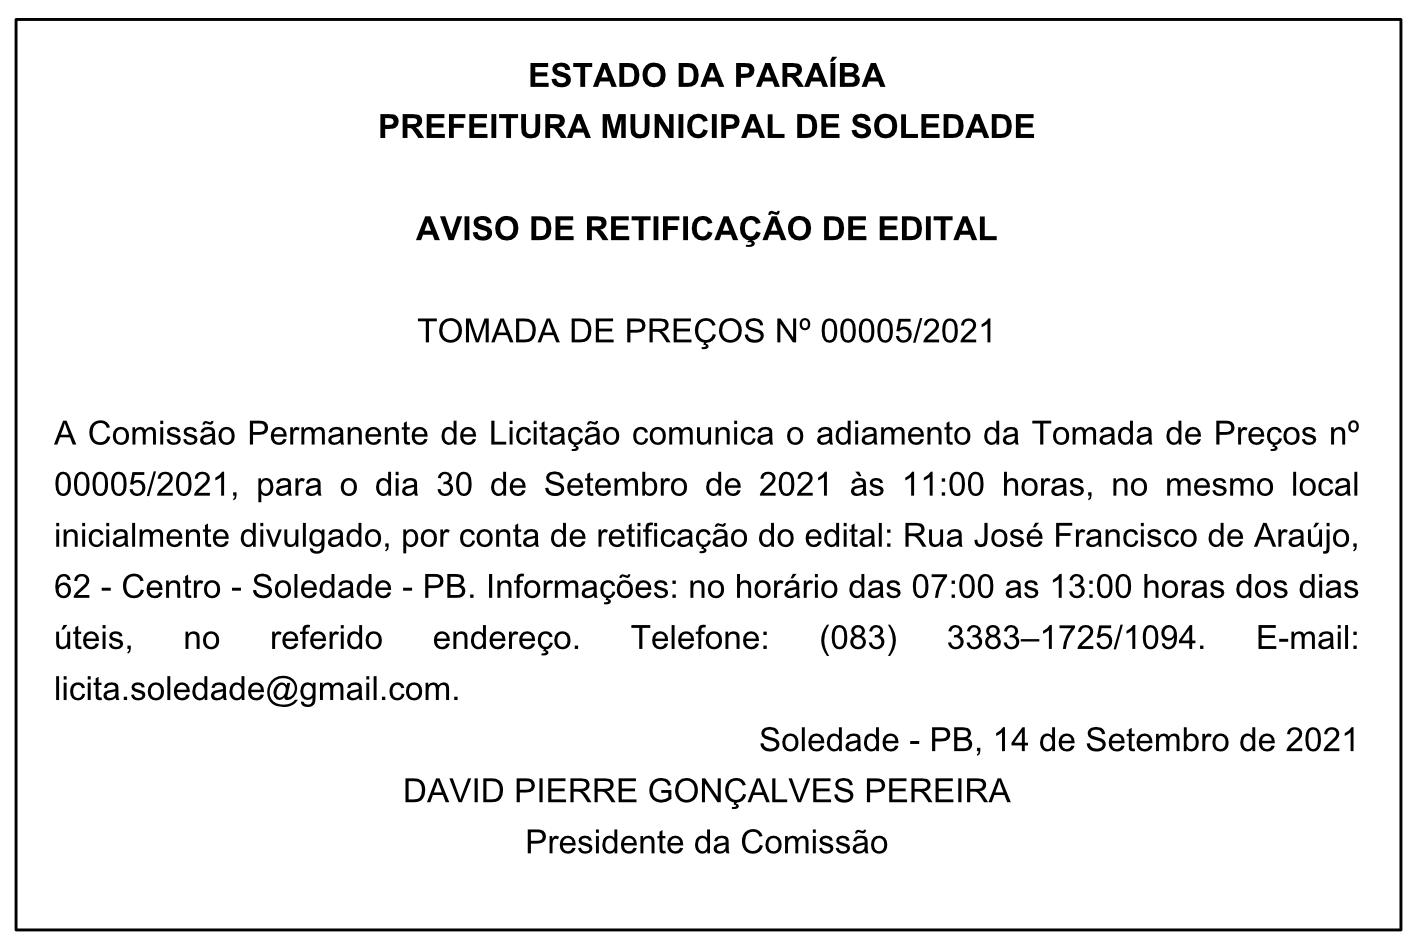 PREFEITURA MUNICIPAL DE SOLEDADE – AVISO DE RETIFICAÇÃO DE EDITAL – TOMADA DE PREÇOS Nº 00005/2021